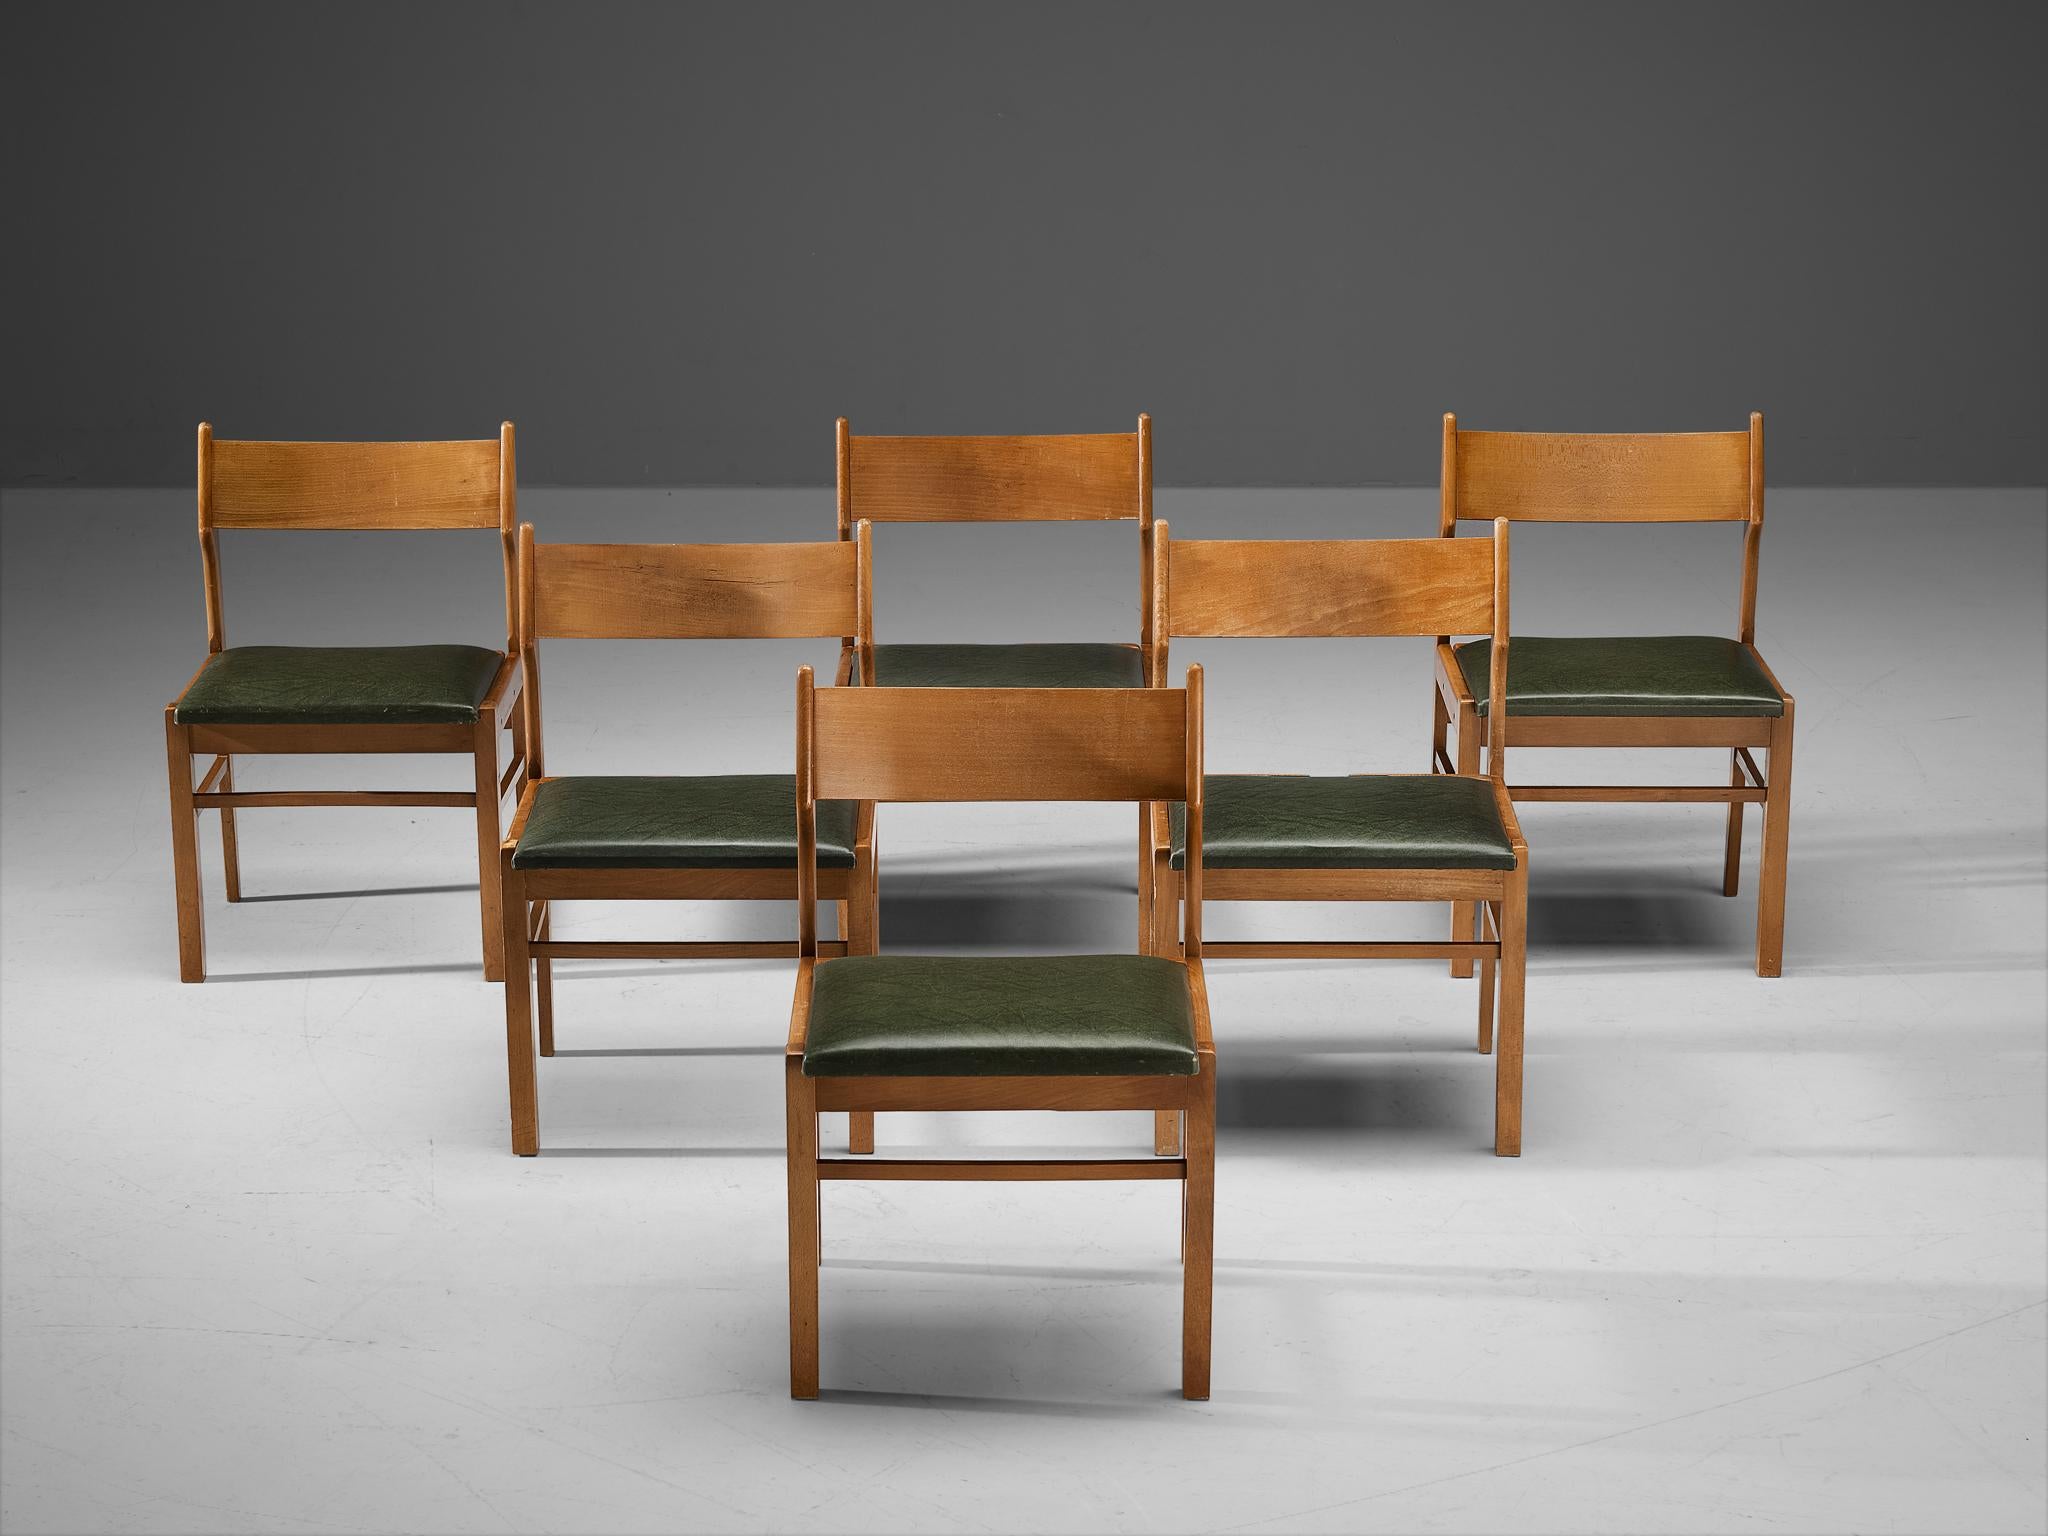 Chaises de salle à manger, bois, simili-cuir vert foncé, Pays-Bas, années 1960. 

Modeste ensemble de six chaises de salle à manger. Son design présente des lignes claires et une banquette arrière ouverte. Les sièges en similicuir vert foncé offrent